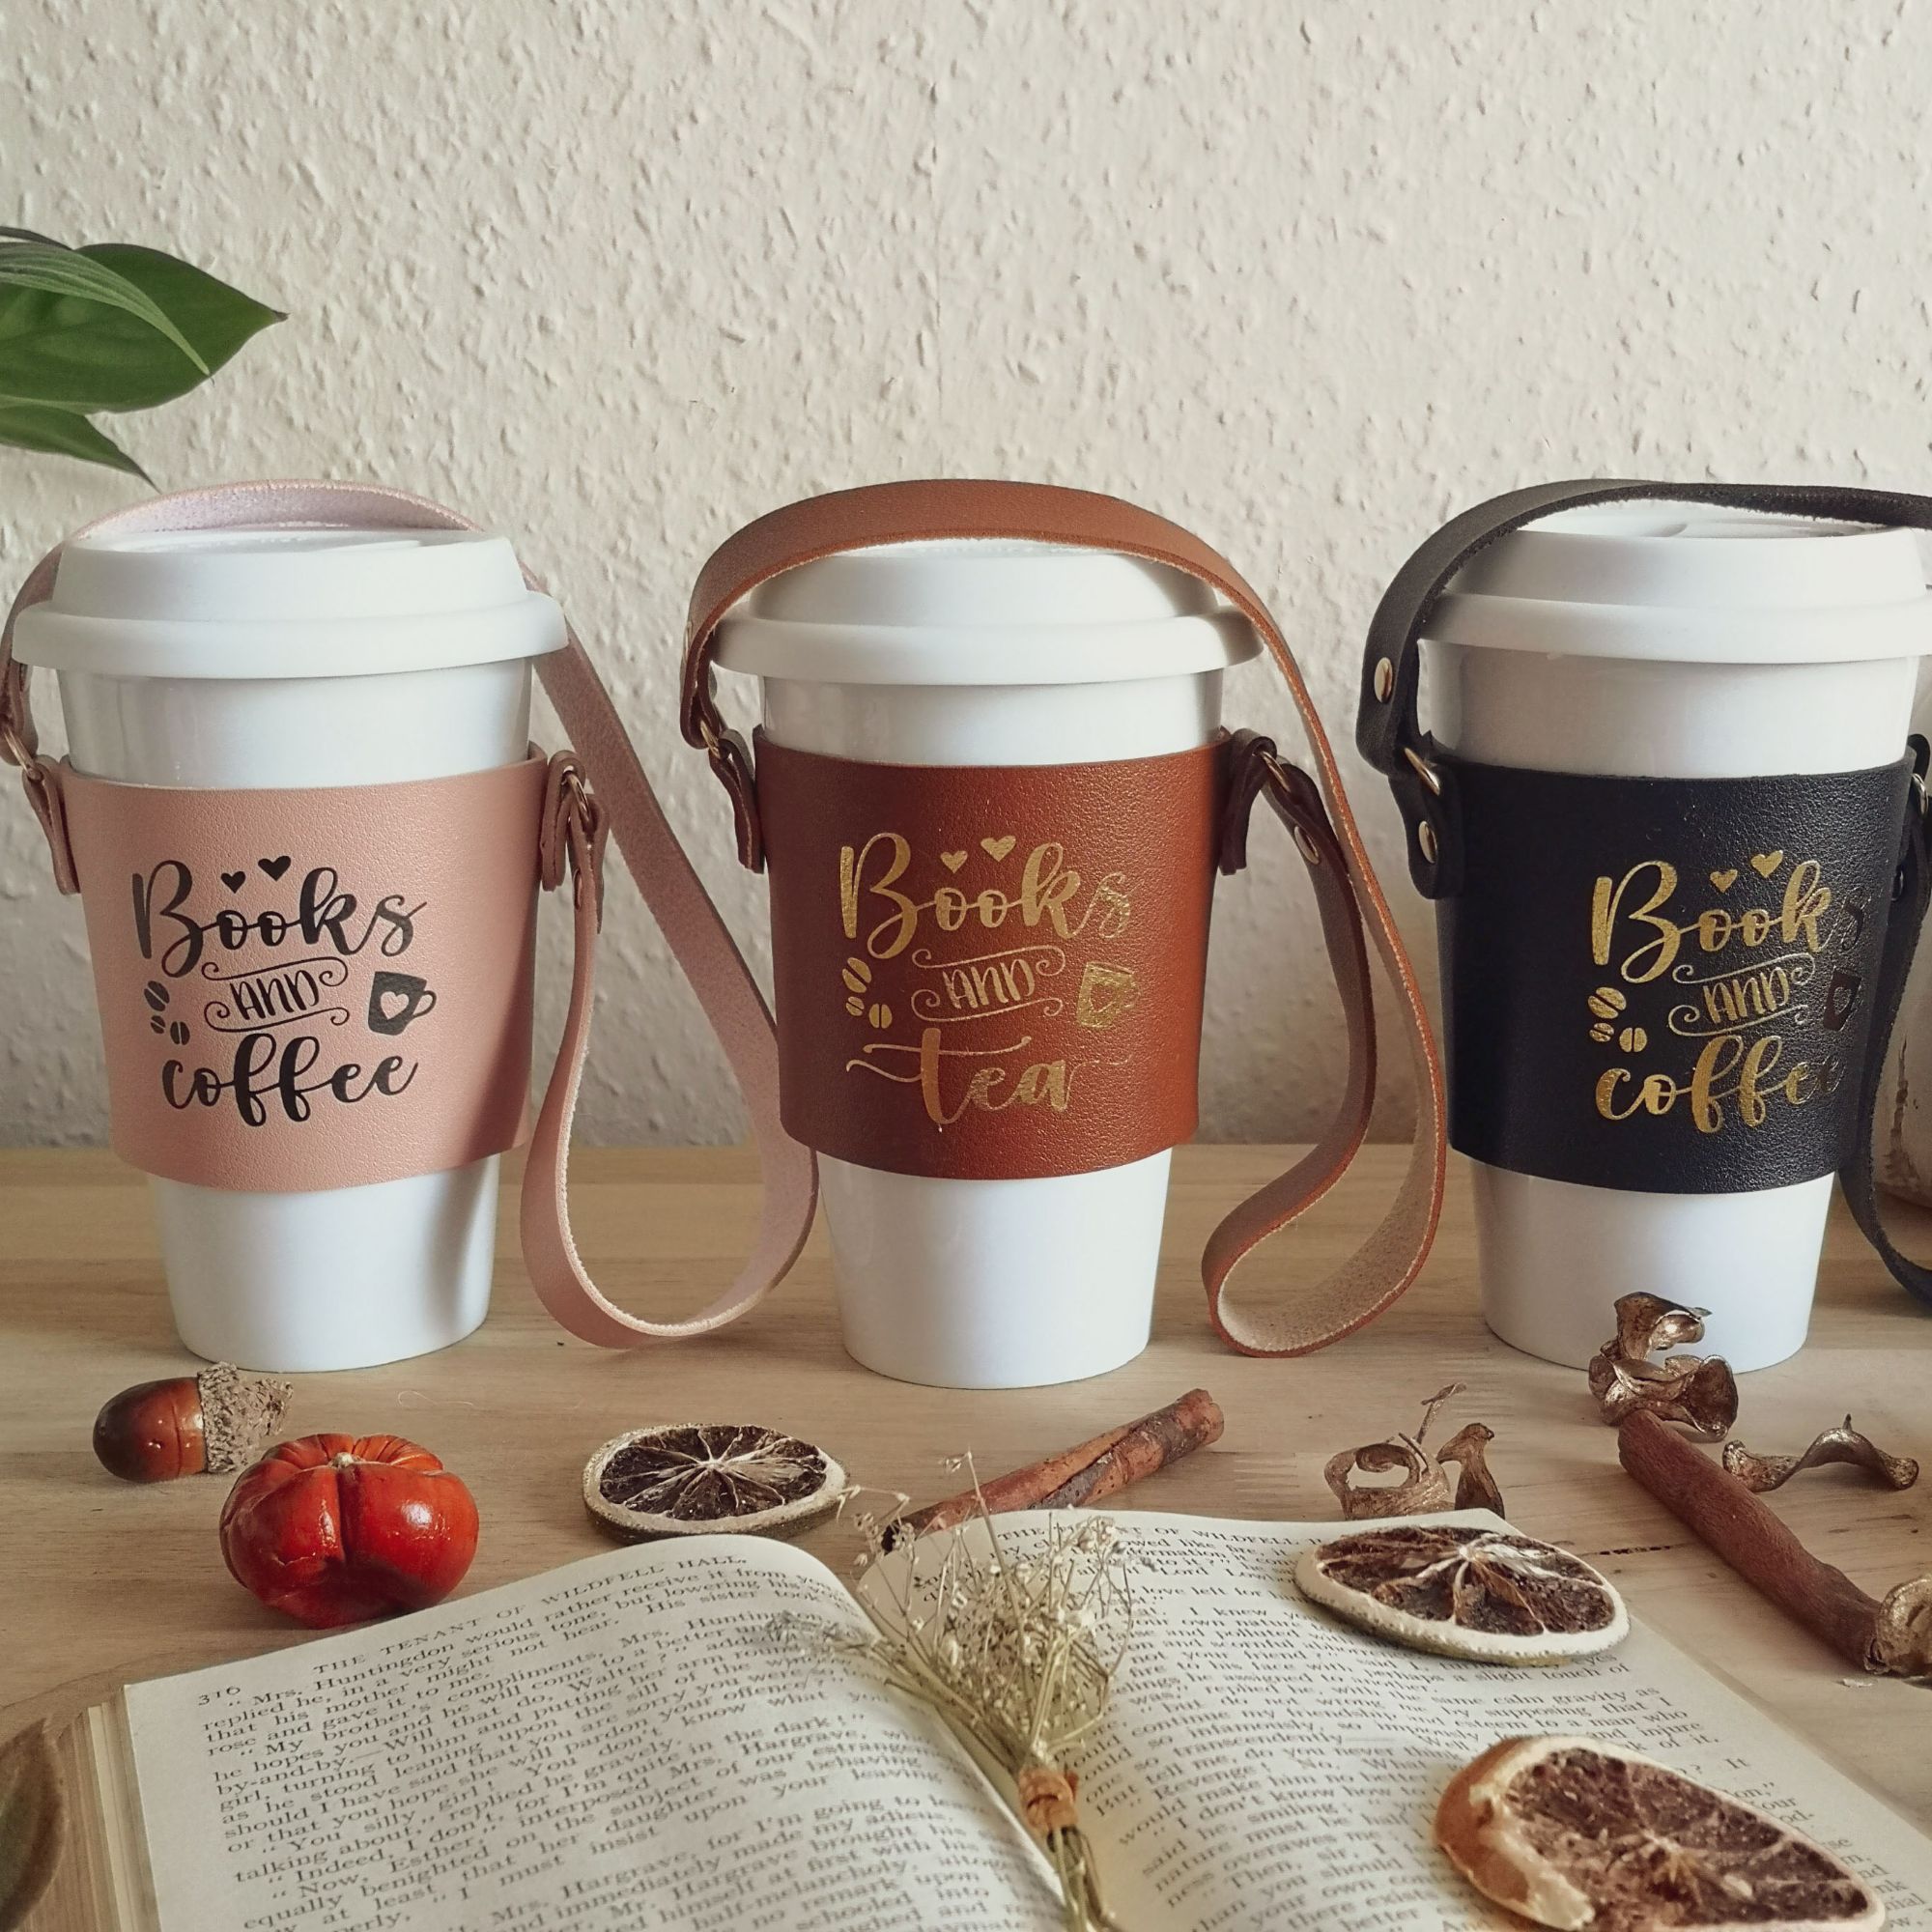                      Books & Coffee Cup Sleeve